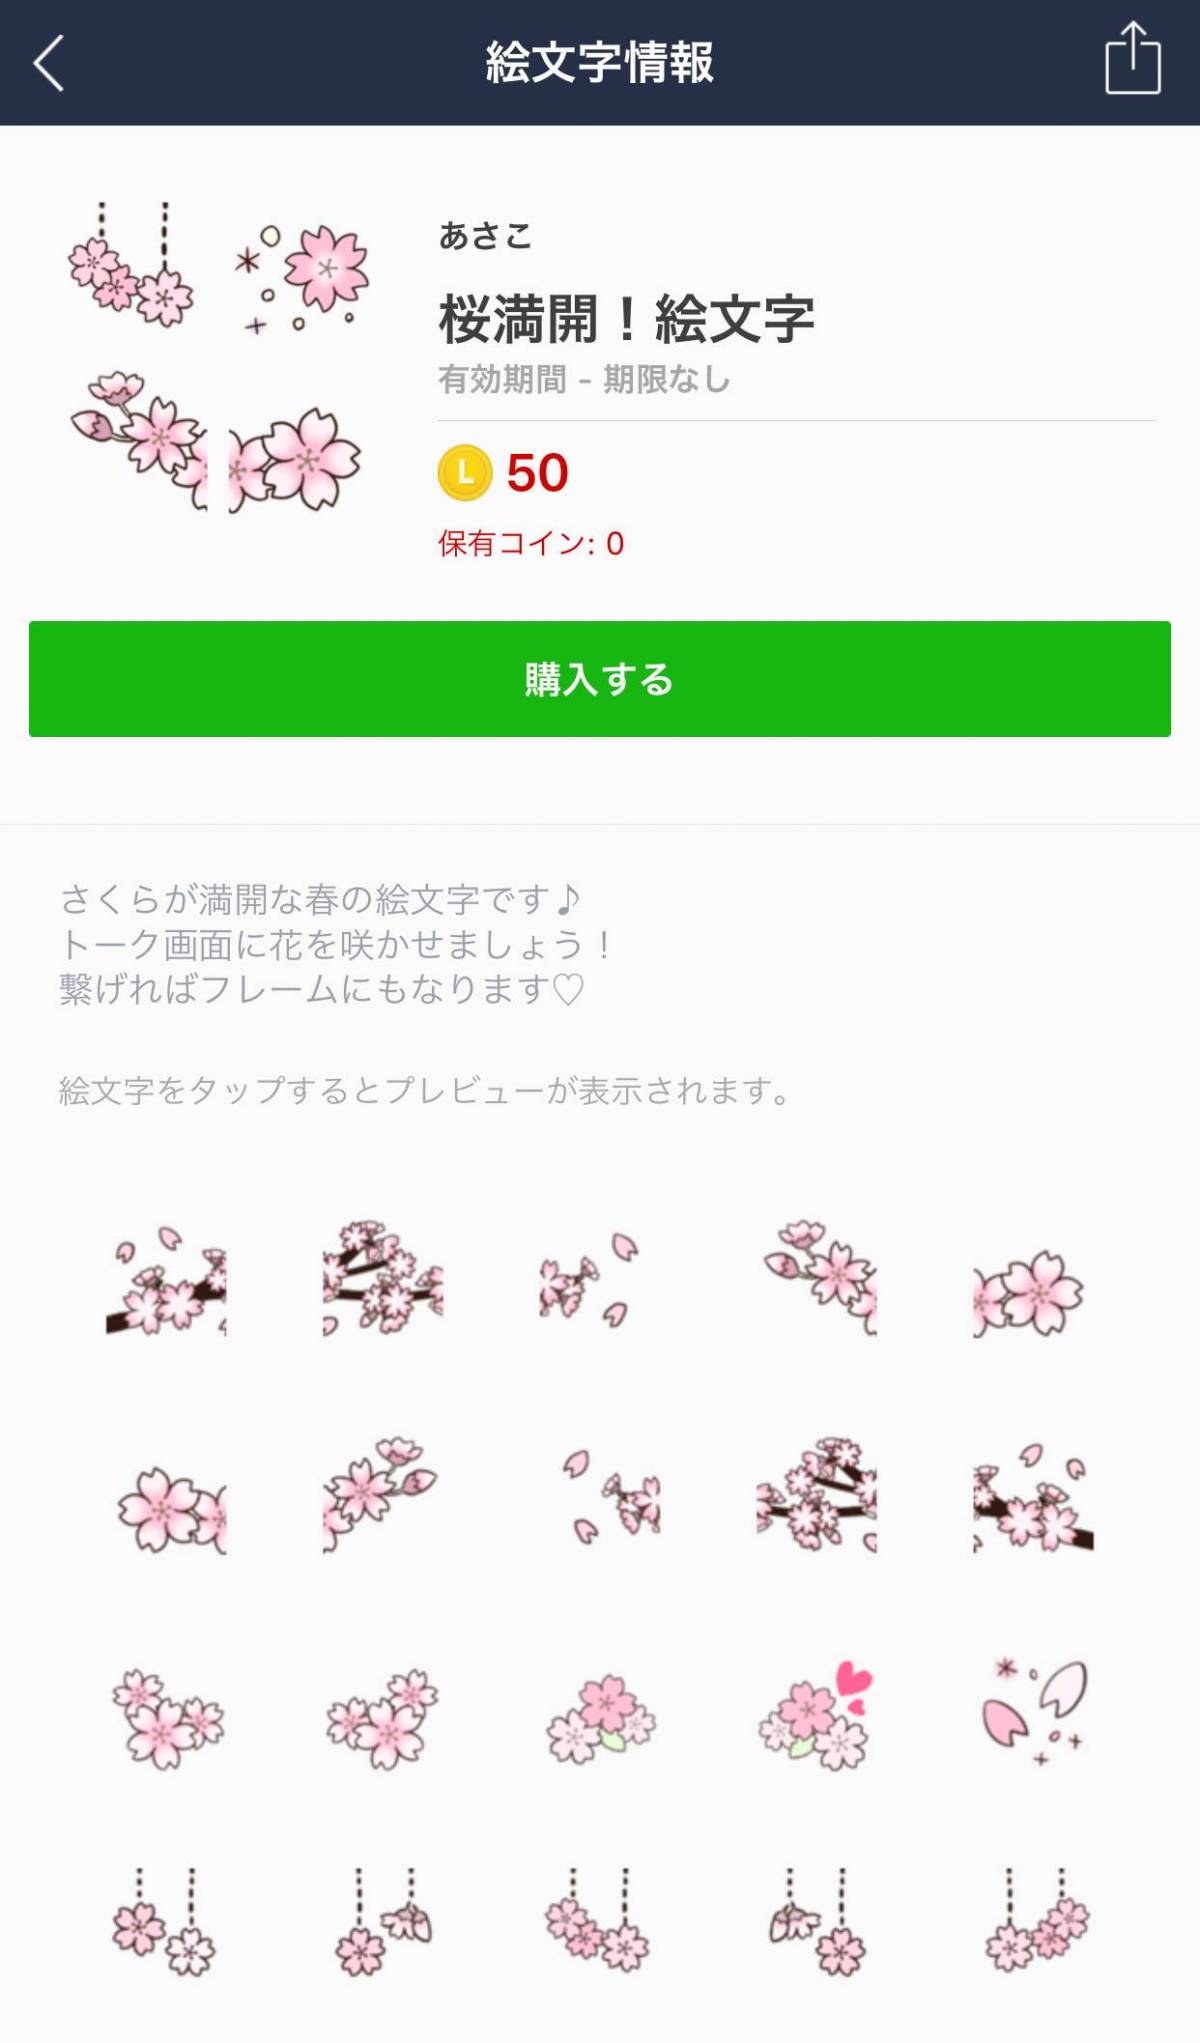 かわいい桜のlineスタンプ 絵文字12選 お花見に誘う時に使いたい の画像 8枚目 Appliv Topics